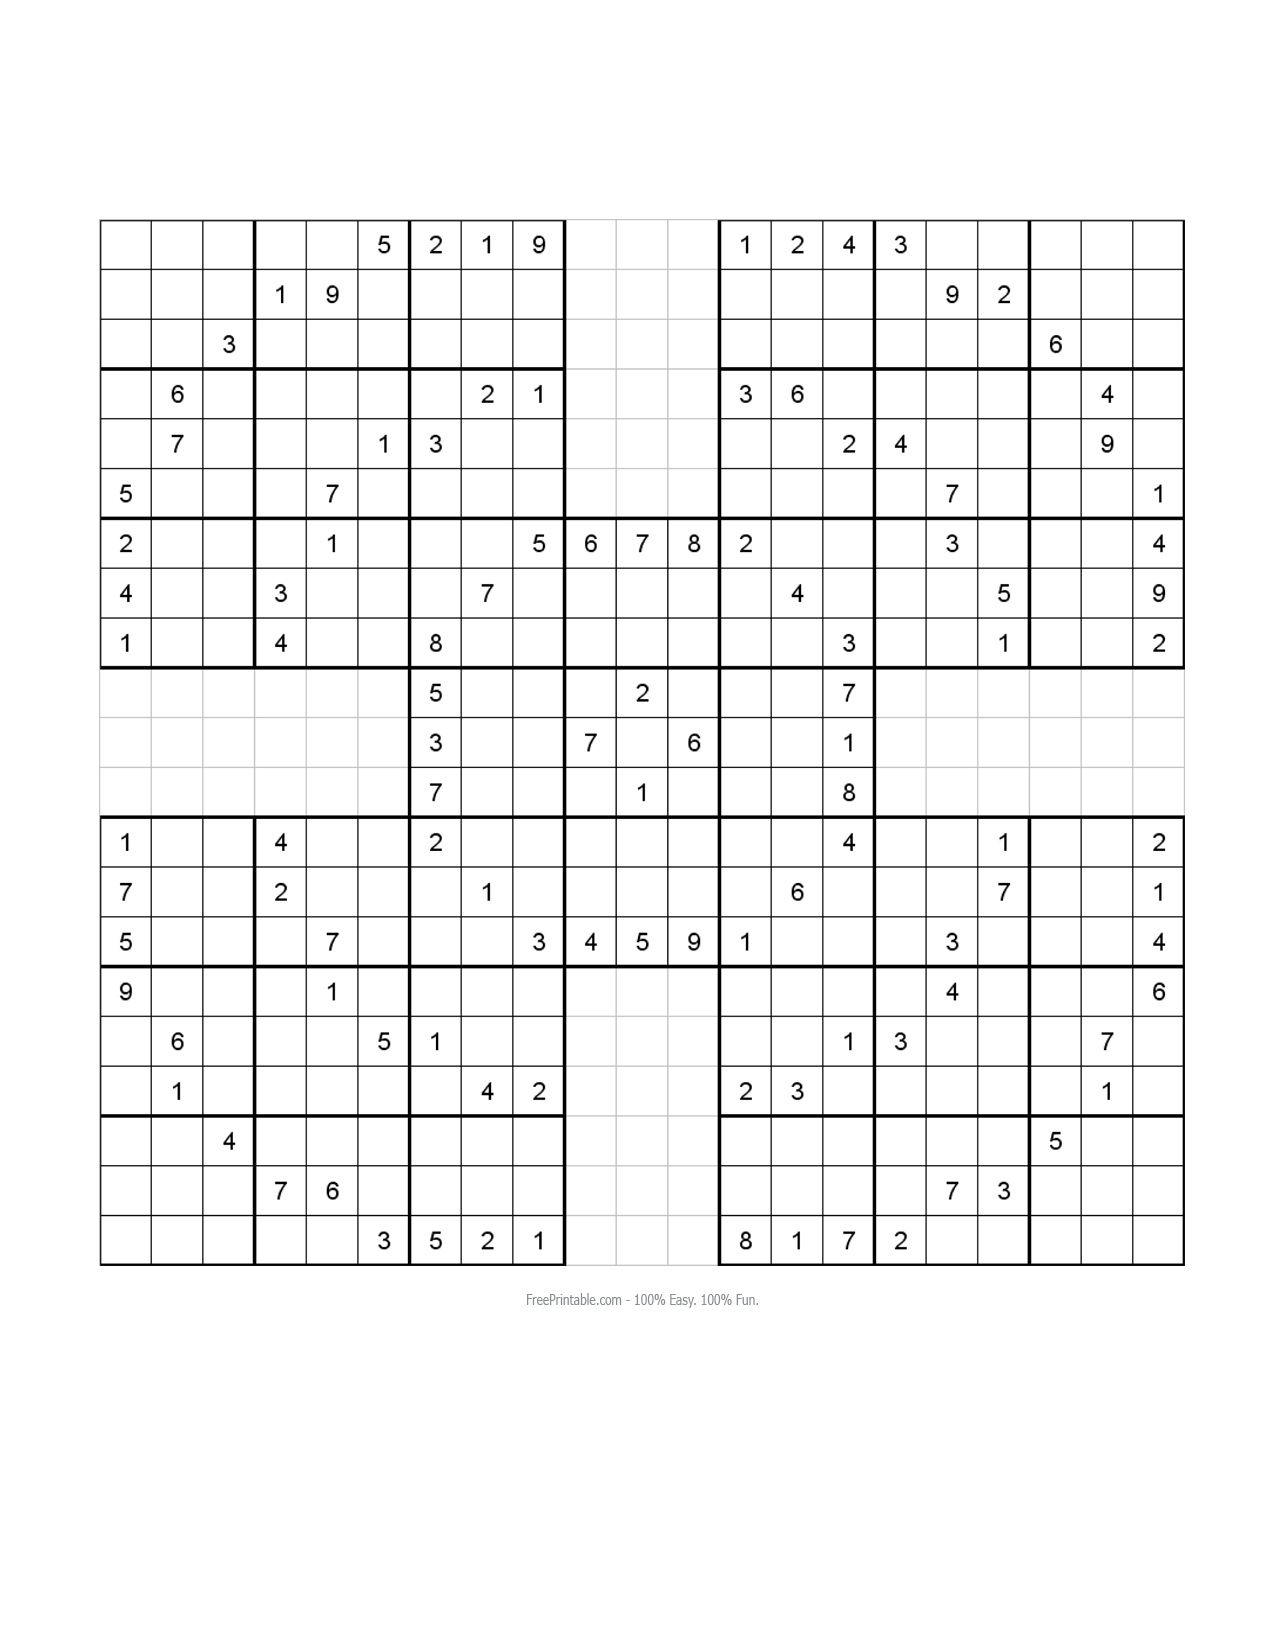 Free Printable Samurai Sudoku Puzzles | Sudoku - Sudoku 16X16 Printable Free